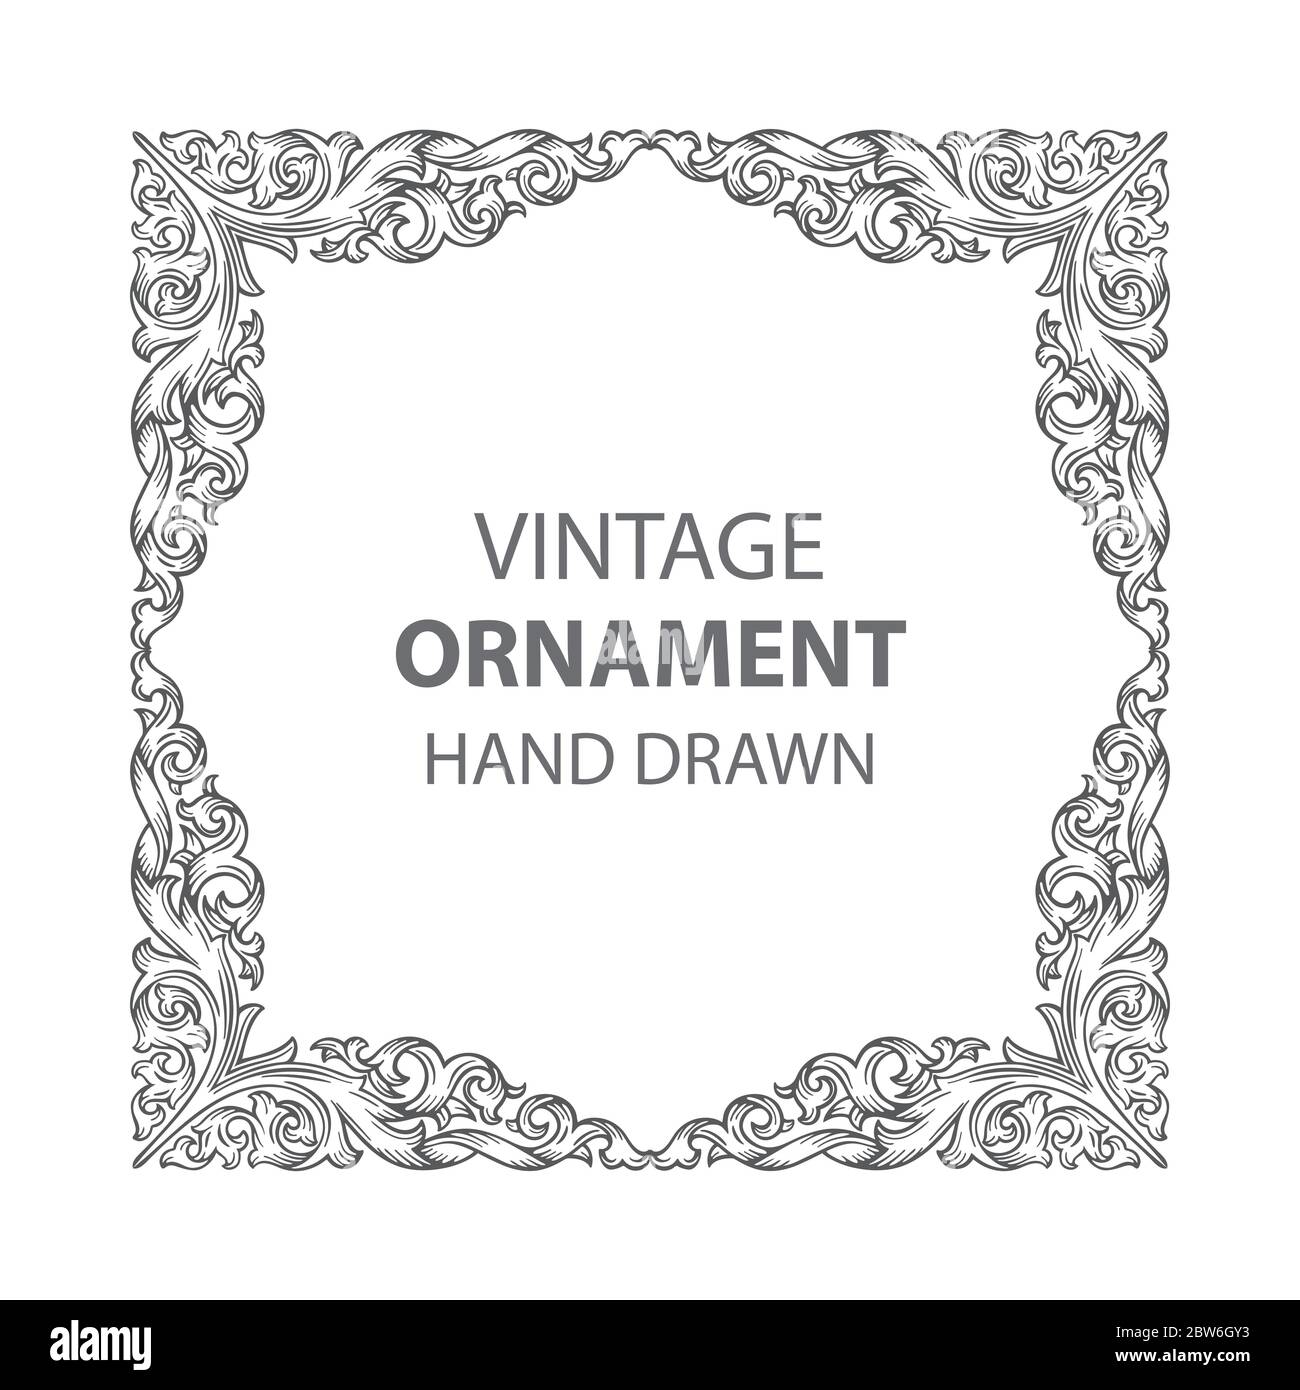 Ornament Vintage Vektor Sammlung Handgezeichnete Teiler, Ornamente